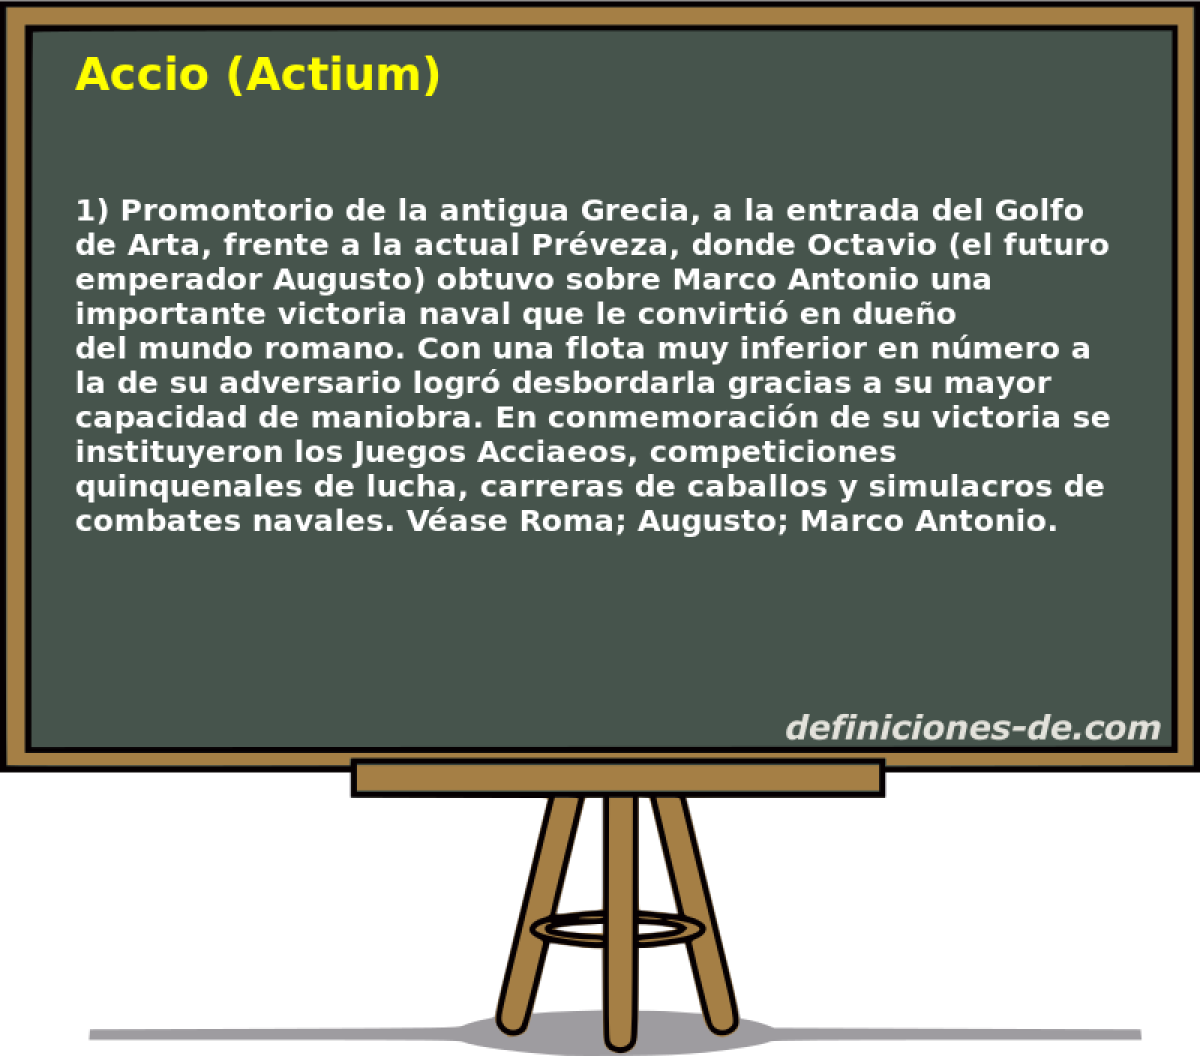 Accio (Actium) 